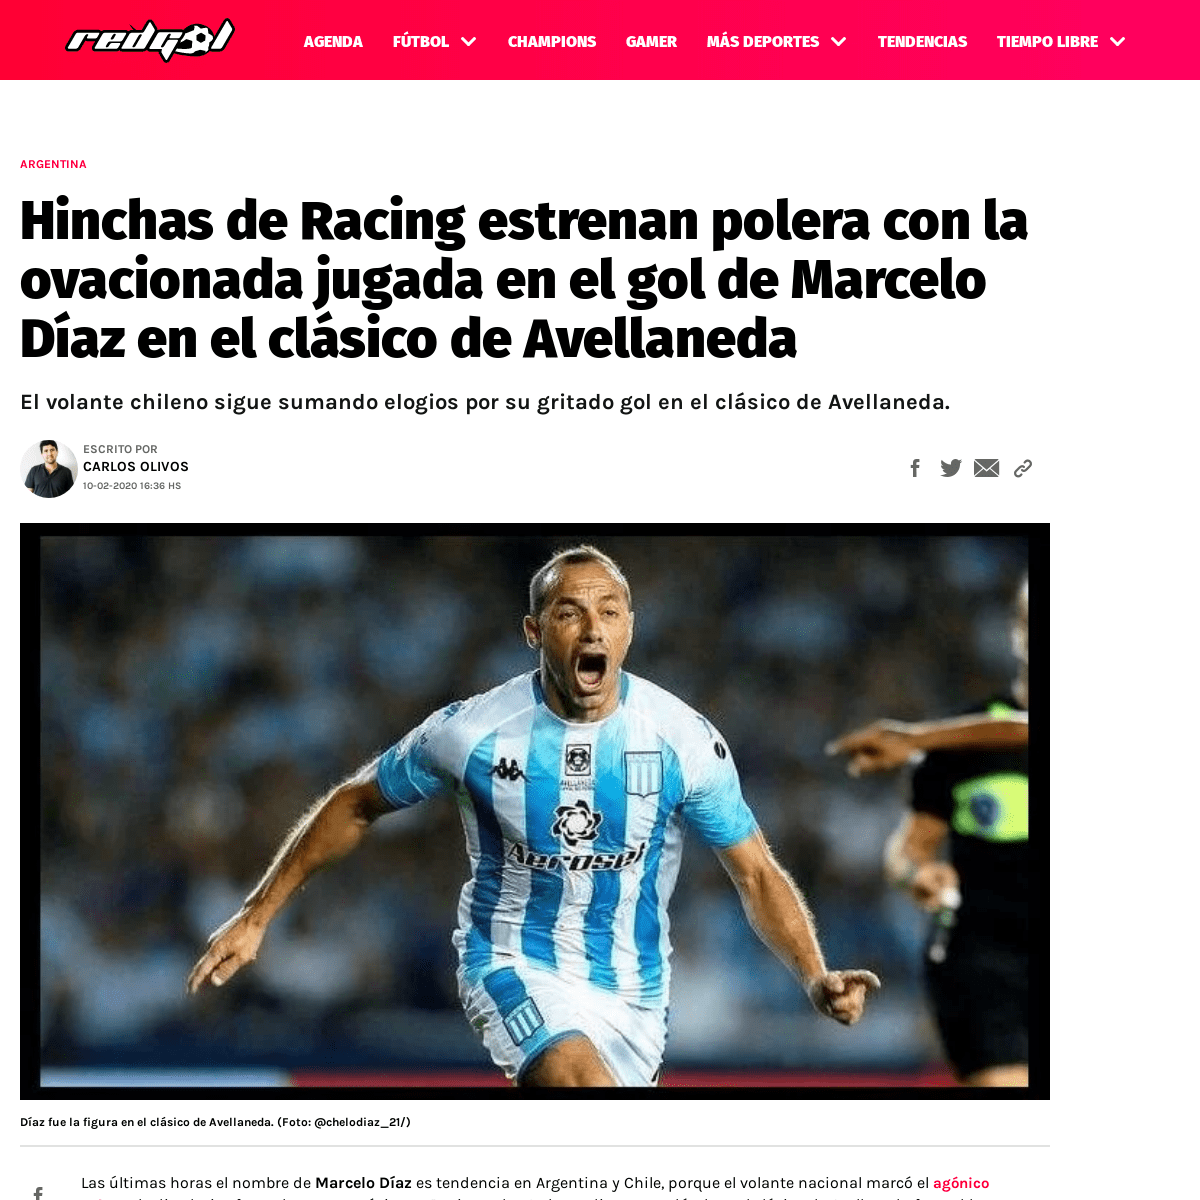 A complete backup of redgol.cl/internacional/Hinchas-de-Racing-estrenan-polera-con-la-ovacionada-jugada-en-el-gol-de-Marcelo-Dia